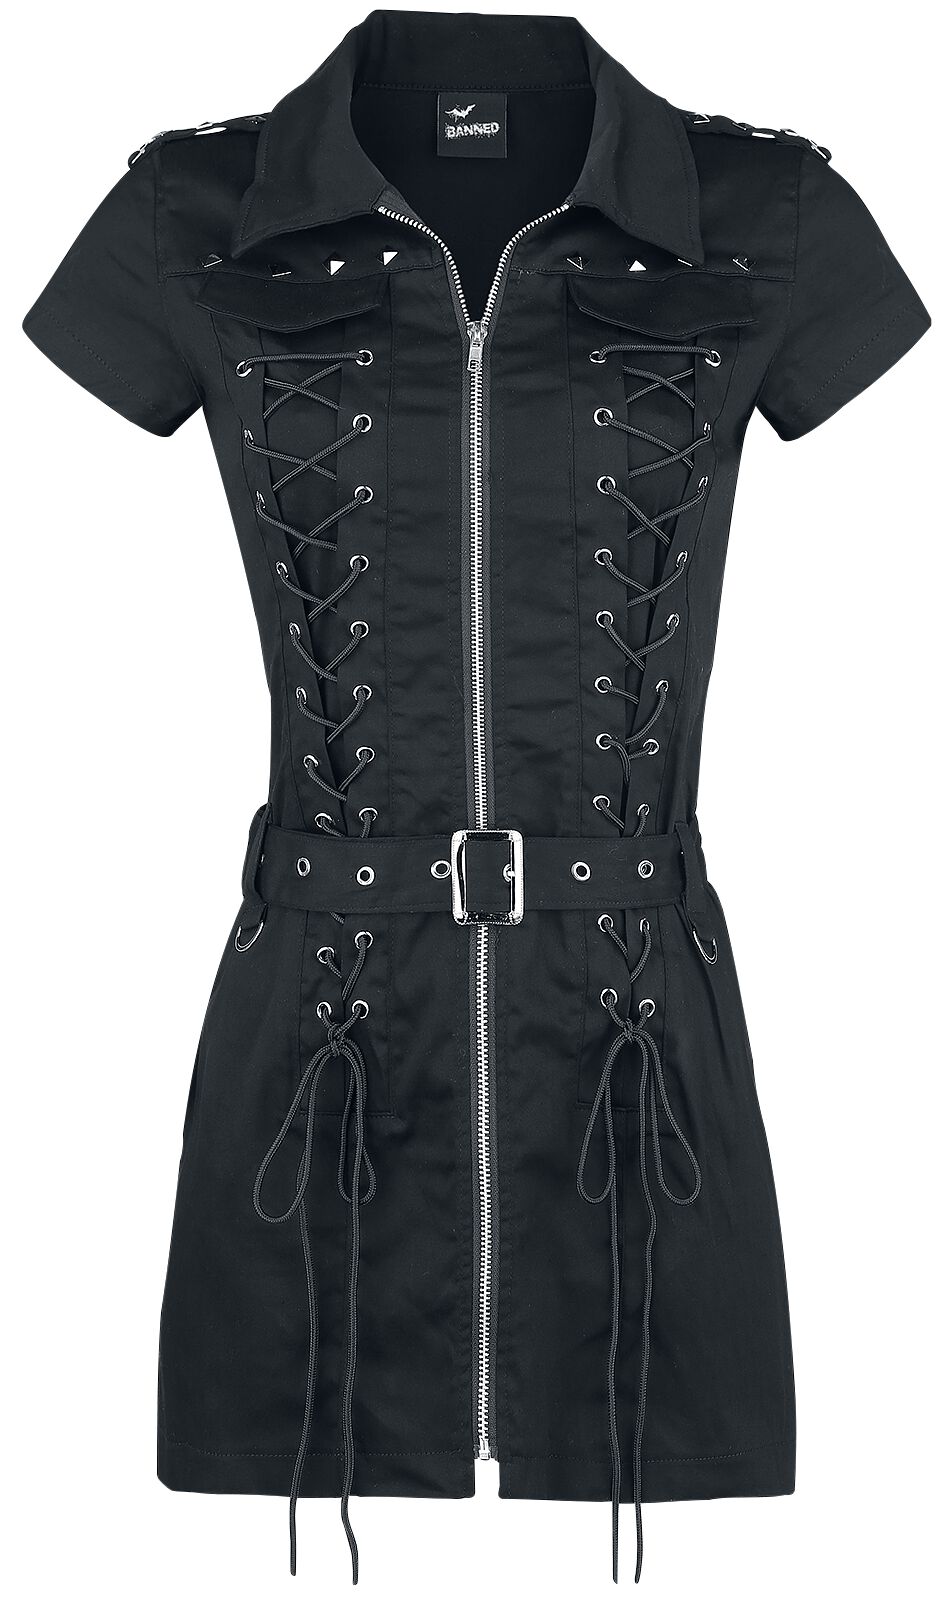 Banned Alternative - Gothic Kurzes Kleid - Mod Dress - XS bis XL - für Damen - Größe XL - schwarz